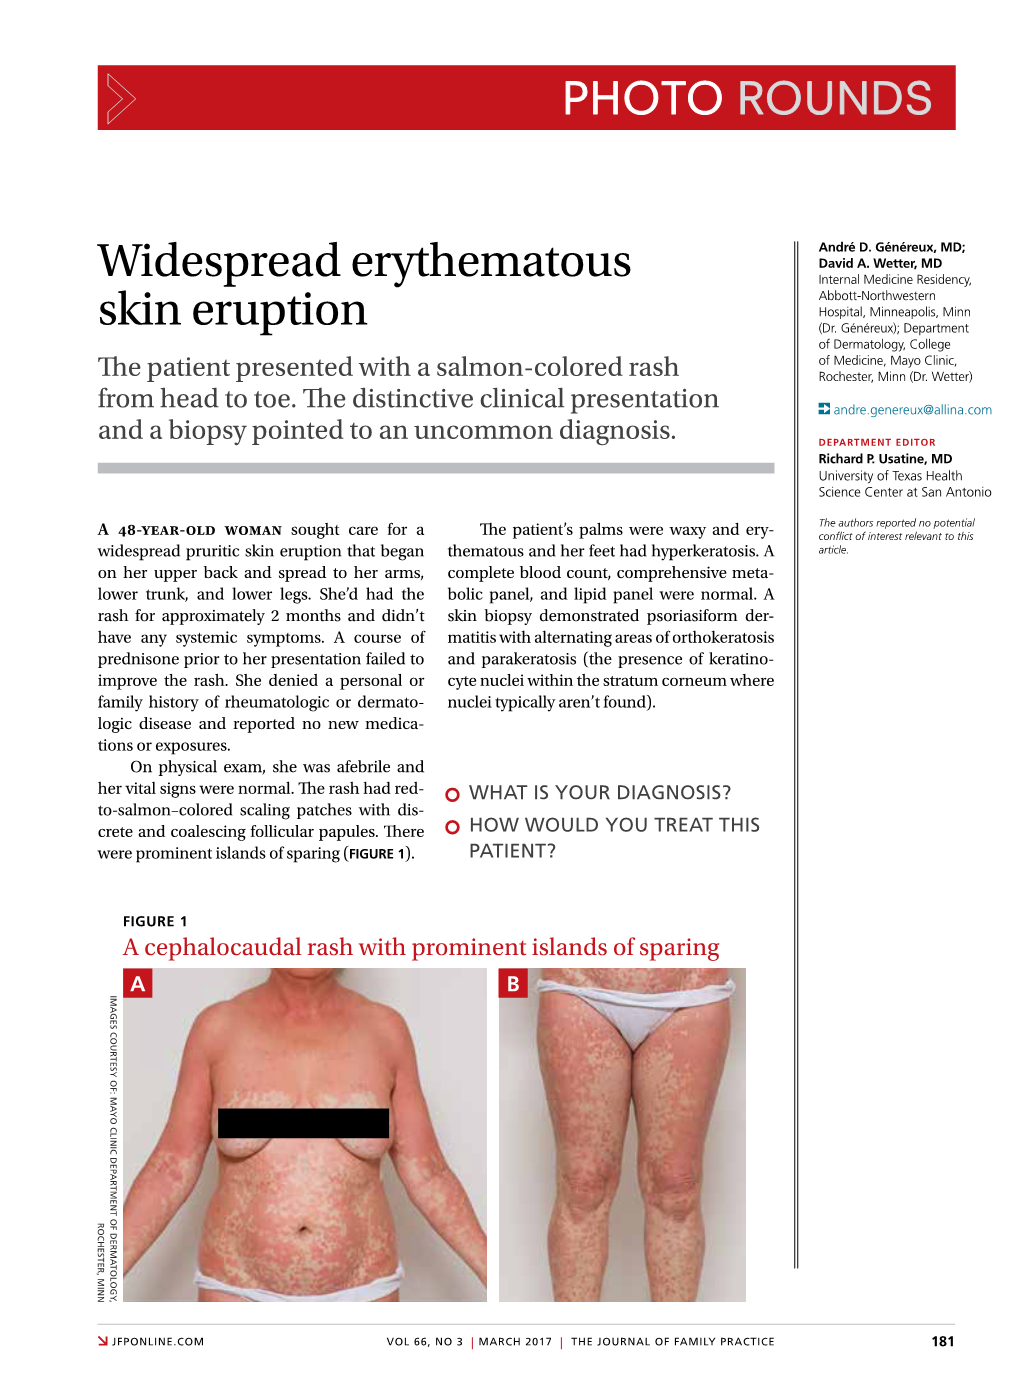 Widespread Erythematous Skin Eruption